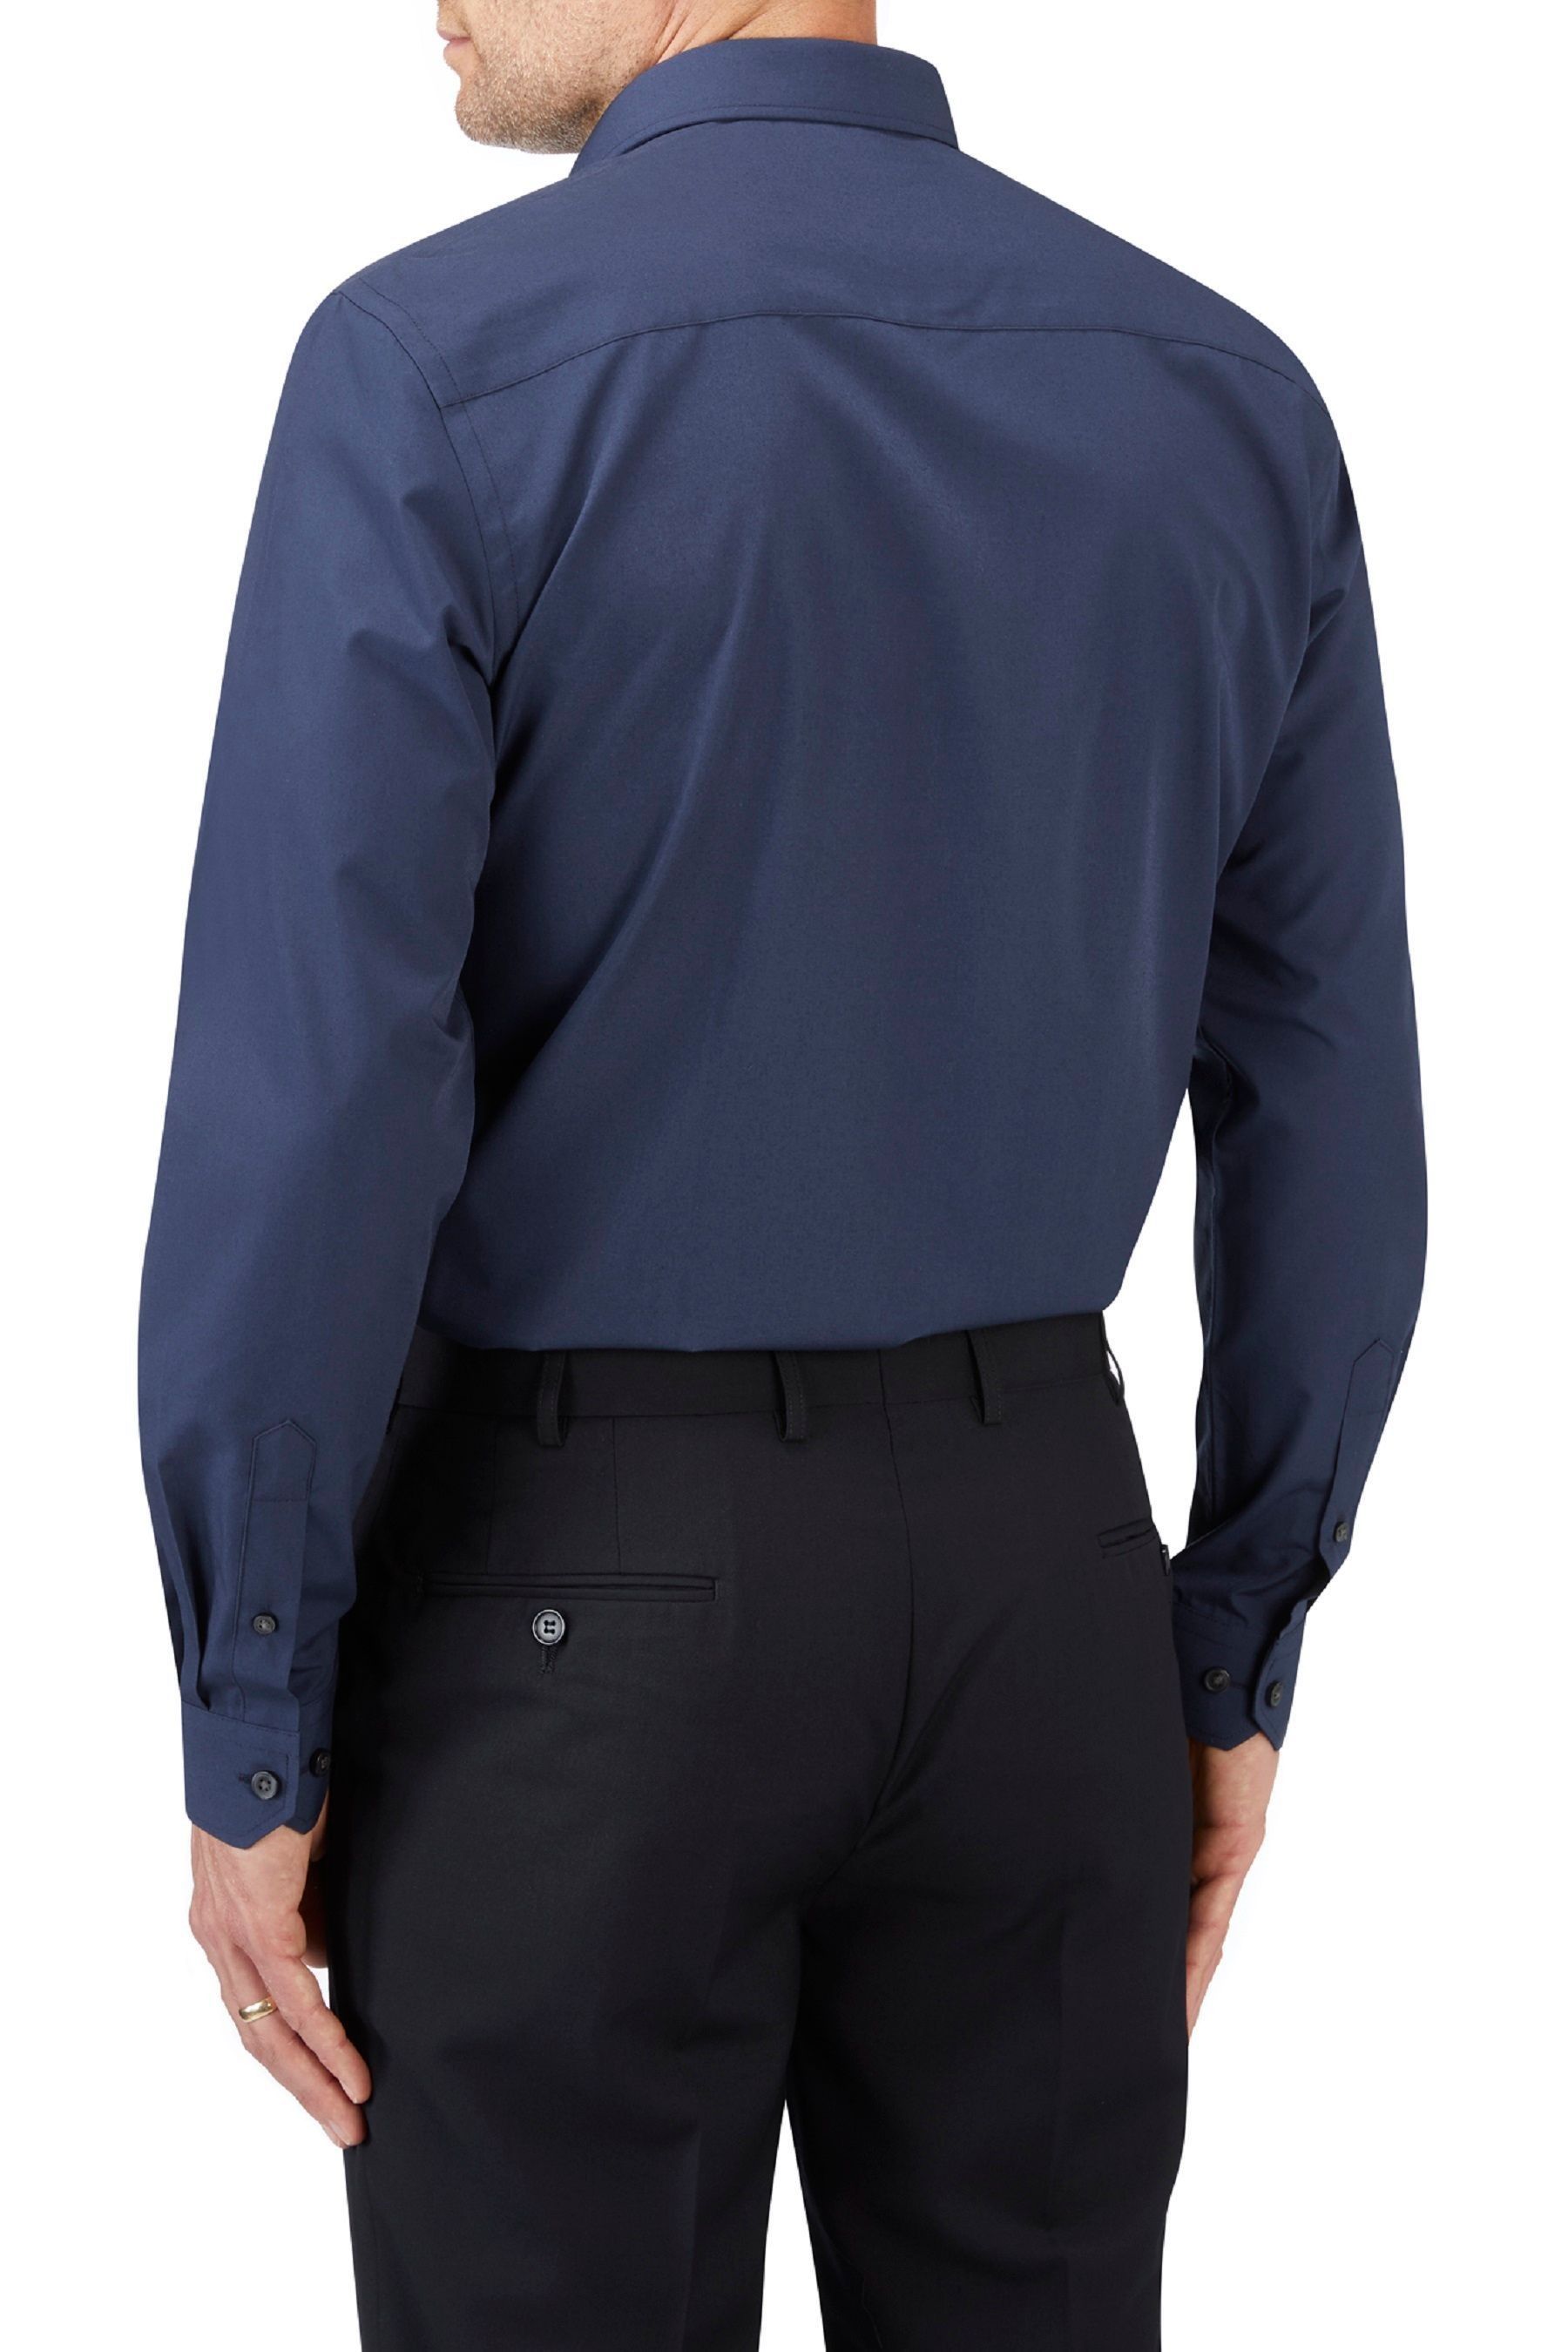 Темно-синяя рубашка облегающего кроя из экологически чистого материала Skopes, синий